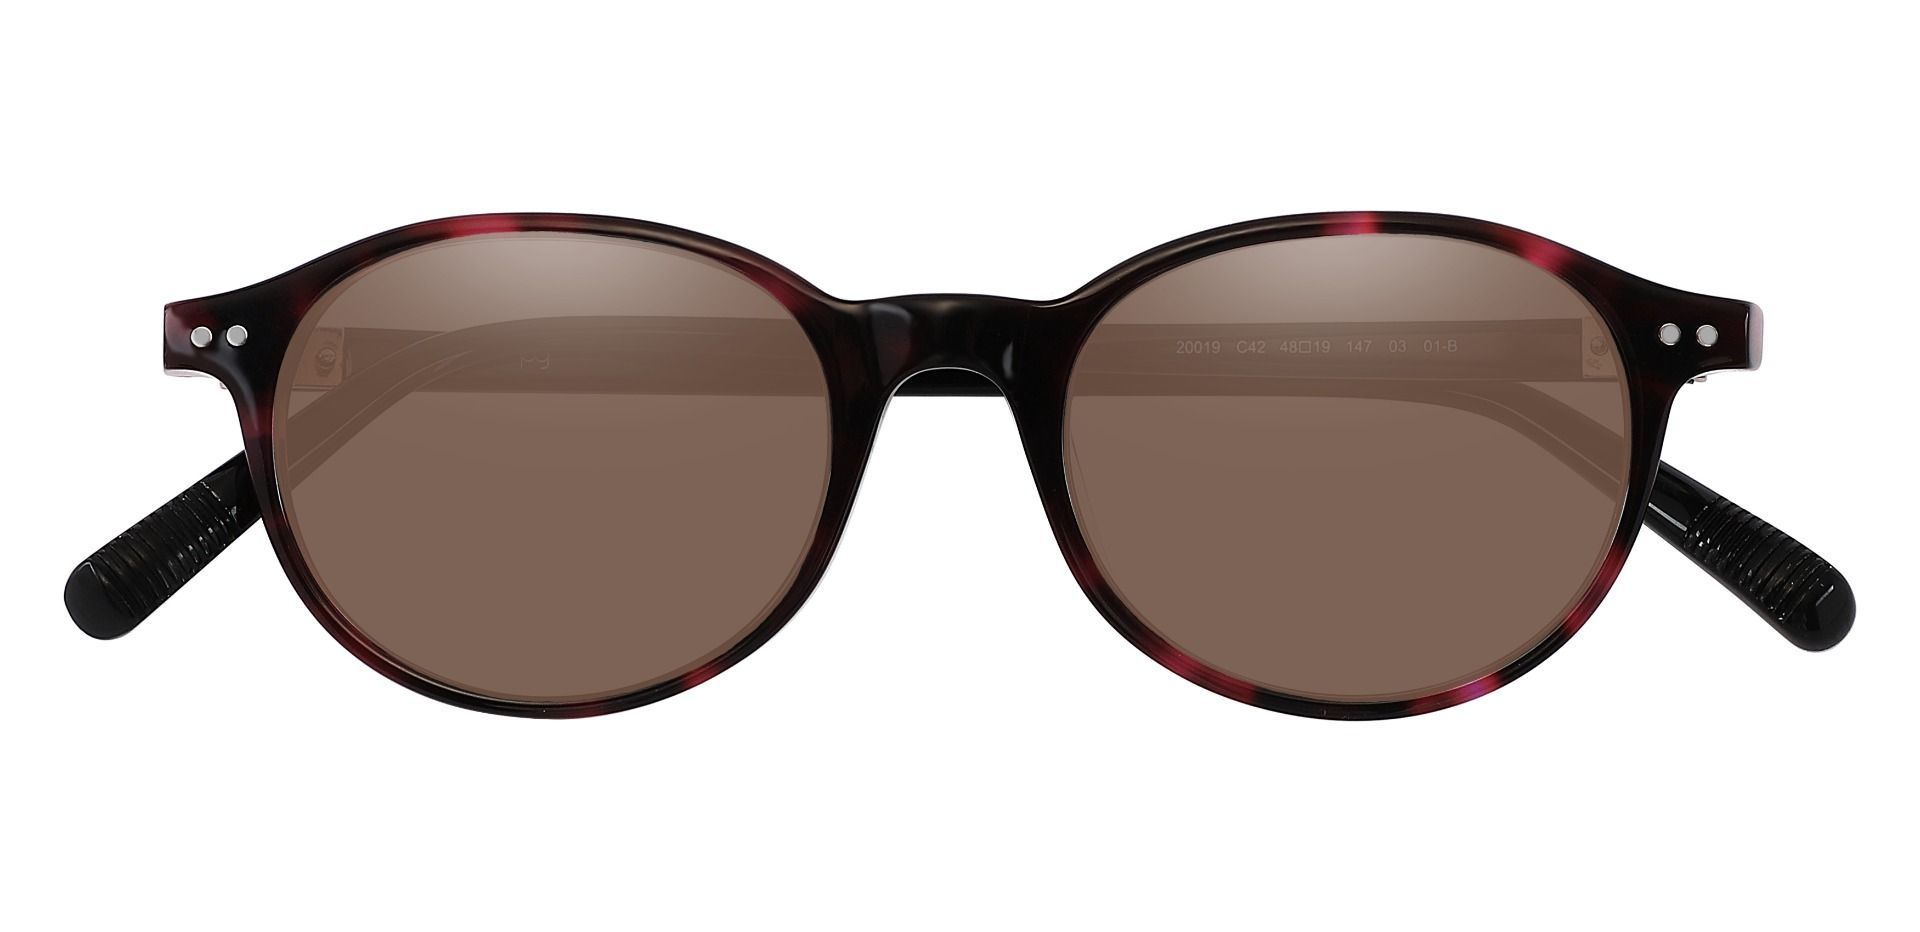 Avon Oval Reading Sunglasses - Tortoise Frame With Brown Lenses